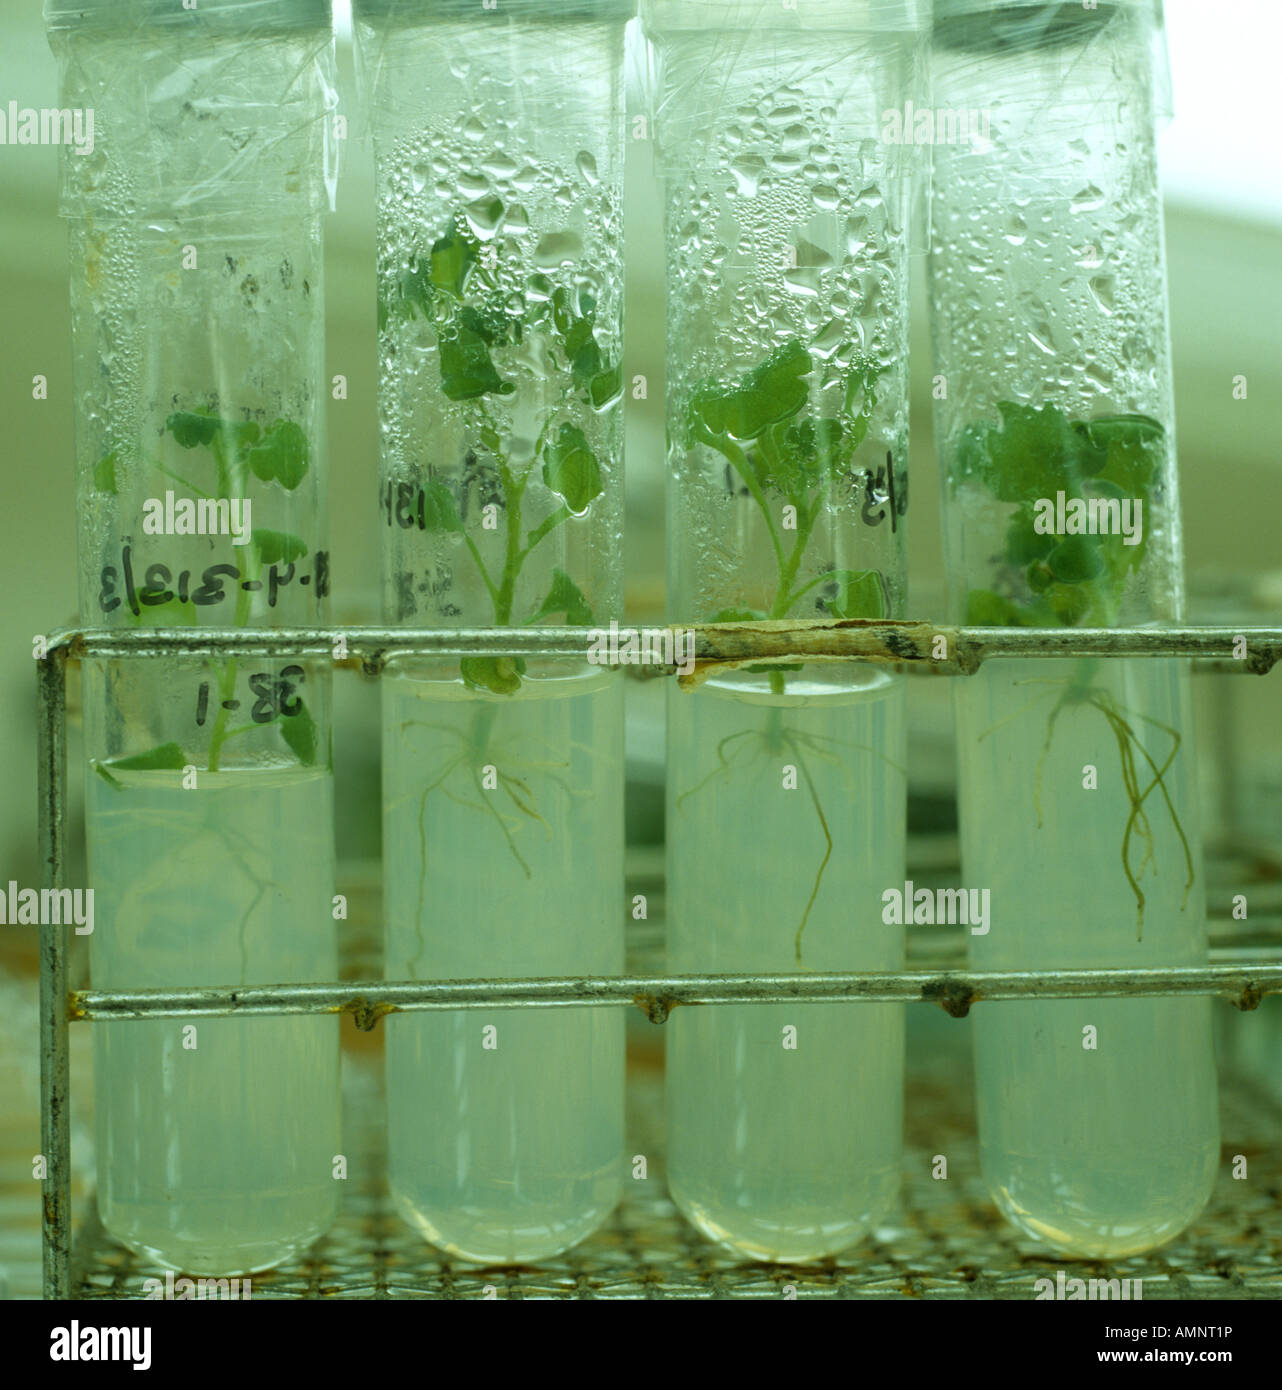 La micropropagation des tissus végétaux dans des tubes à essai élevés dans un environnement constant chamber Banque D'Images